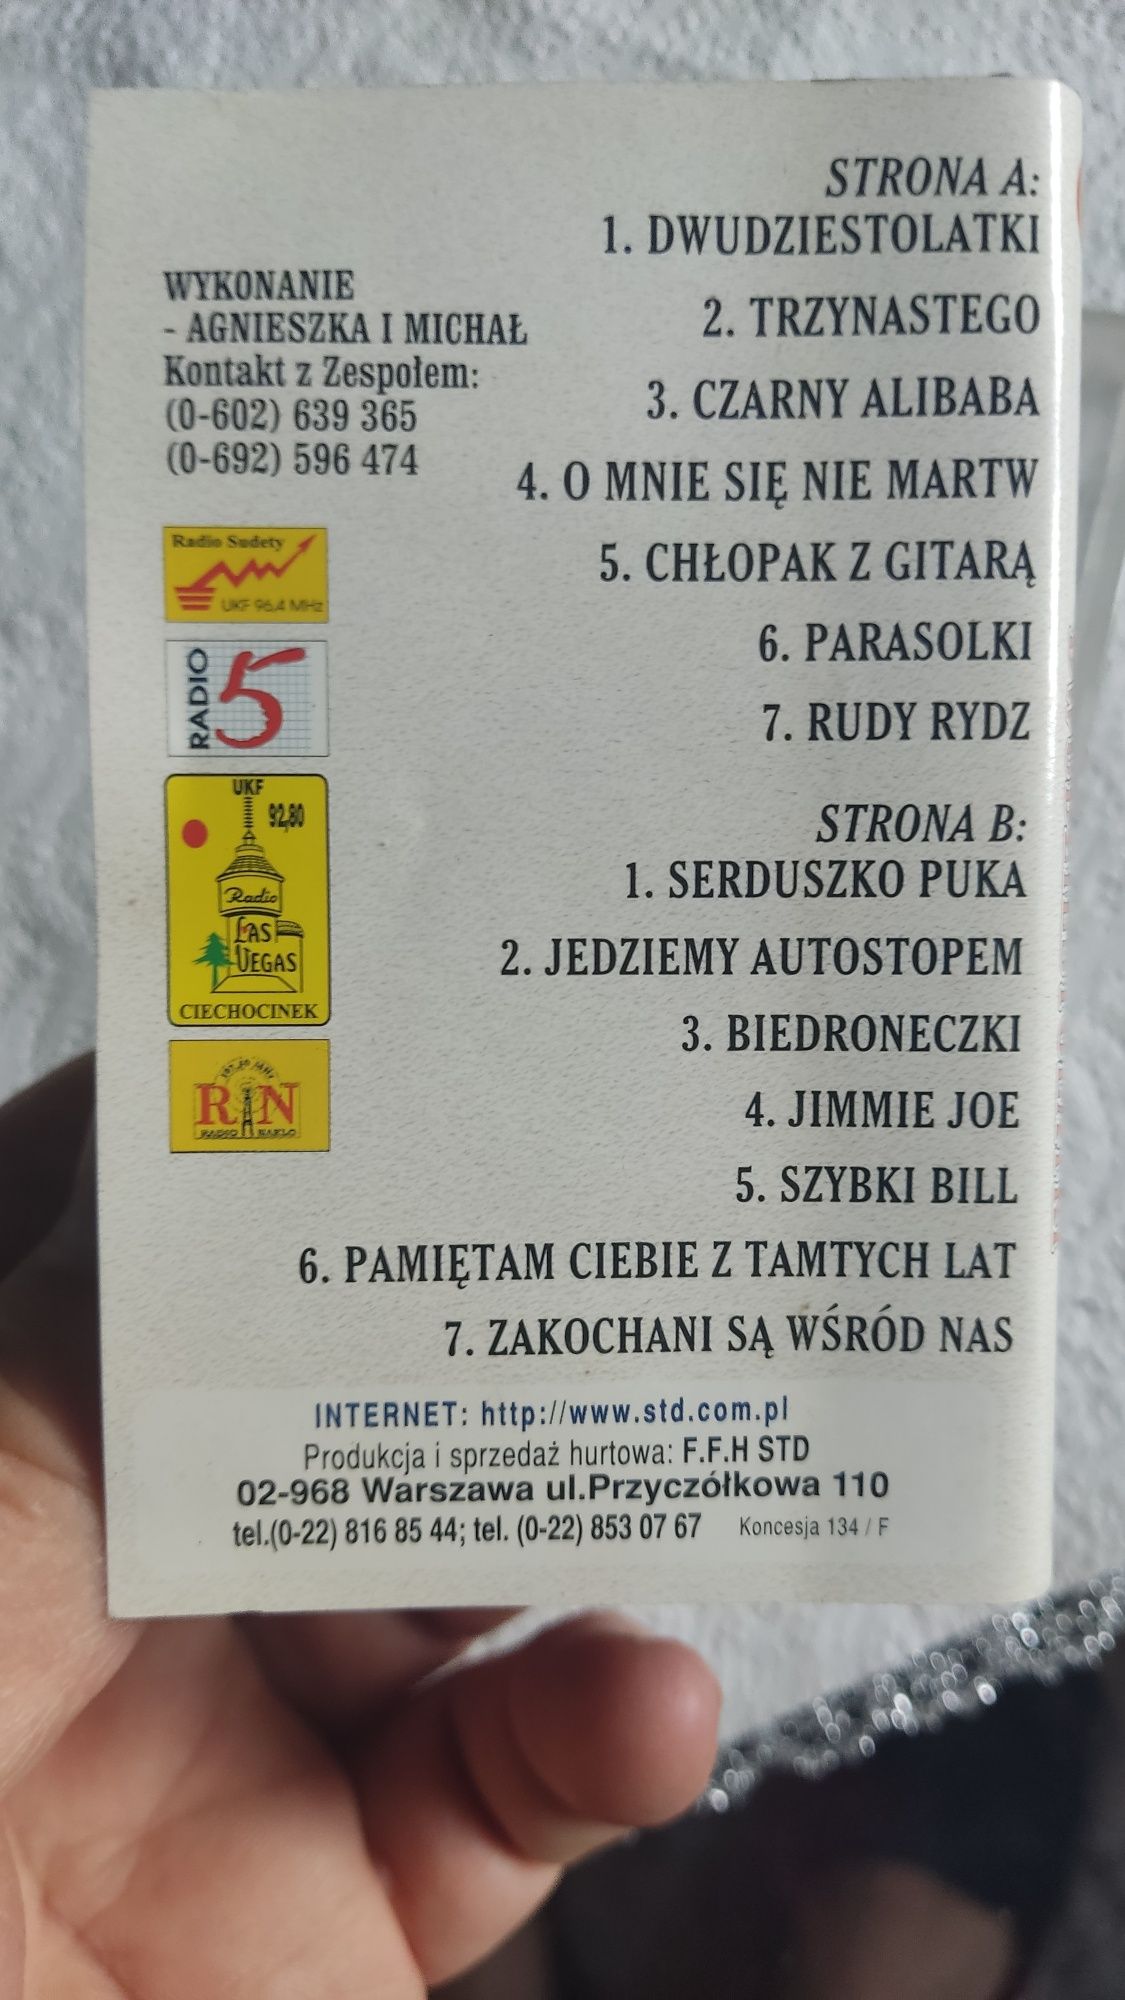 Std Agnieszka i Michał Dwudziestolatki kaseta audio disco polo